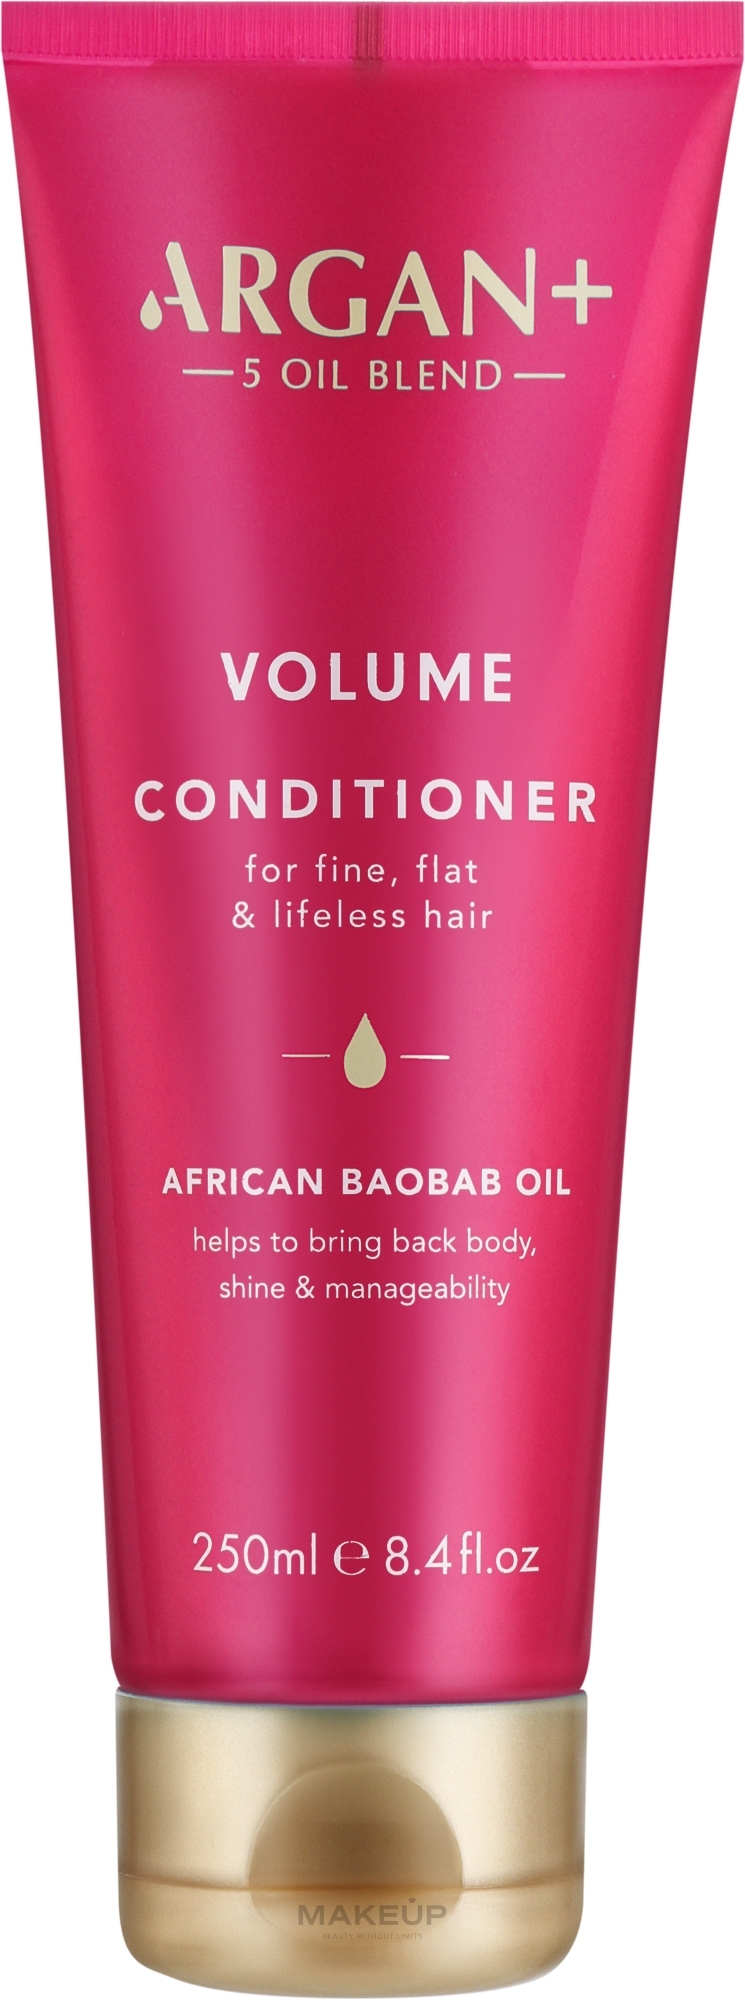 Кондиционер для объема волос - Argan+ African Baobab Oil Volume Conditioner — фото 250ml